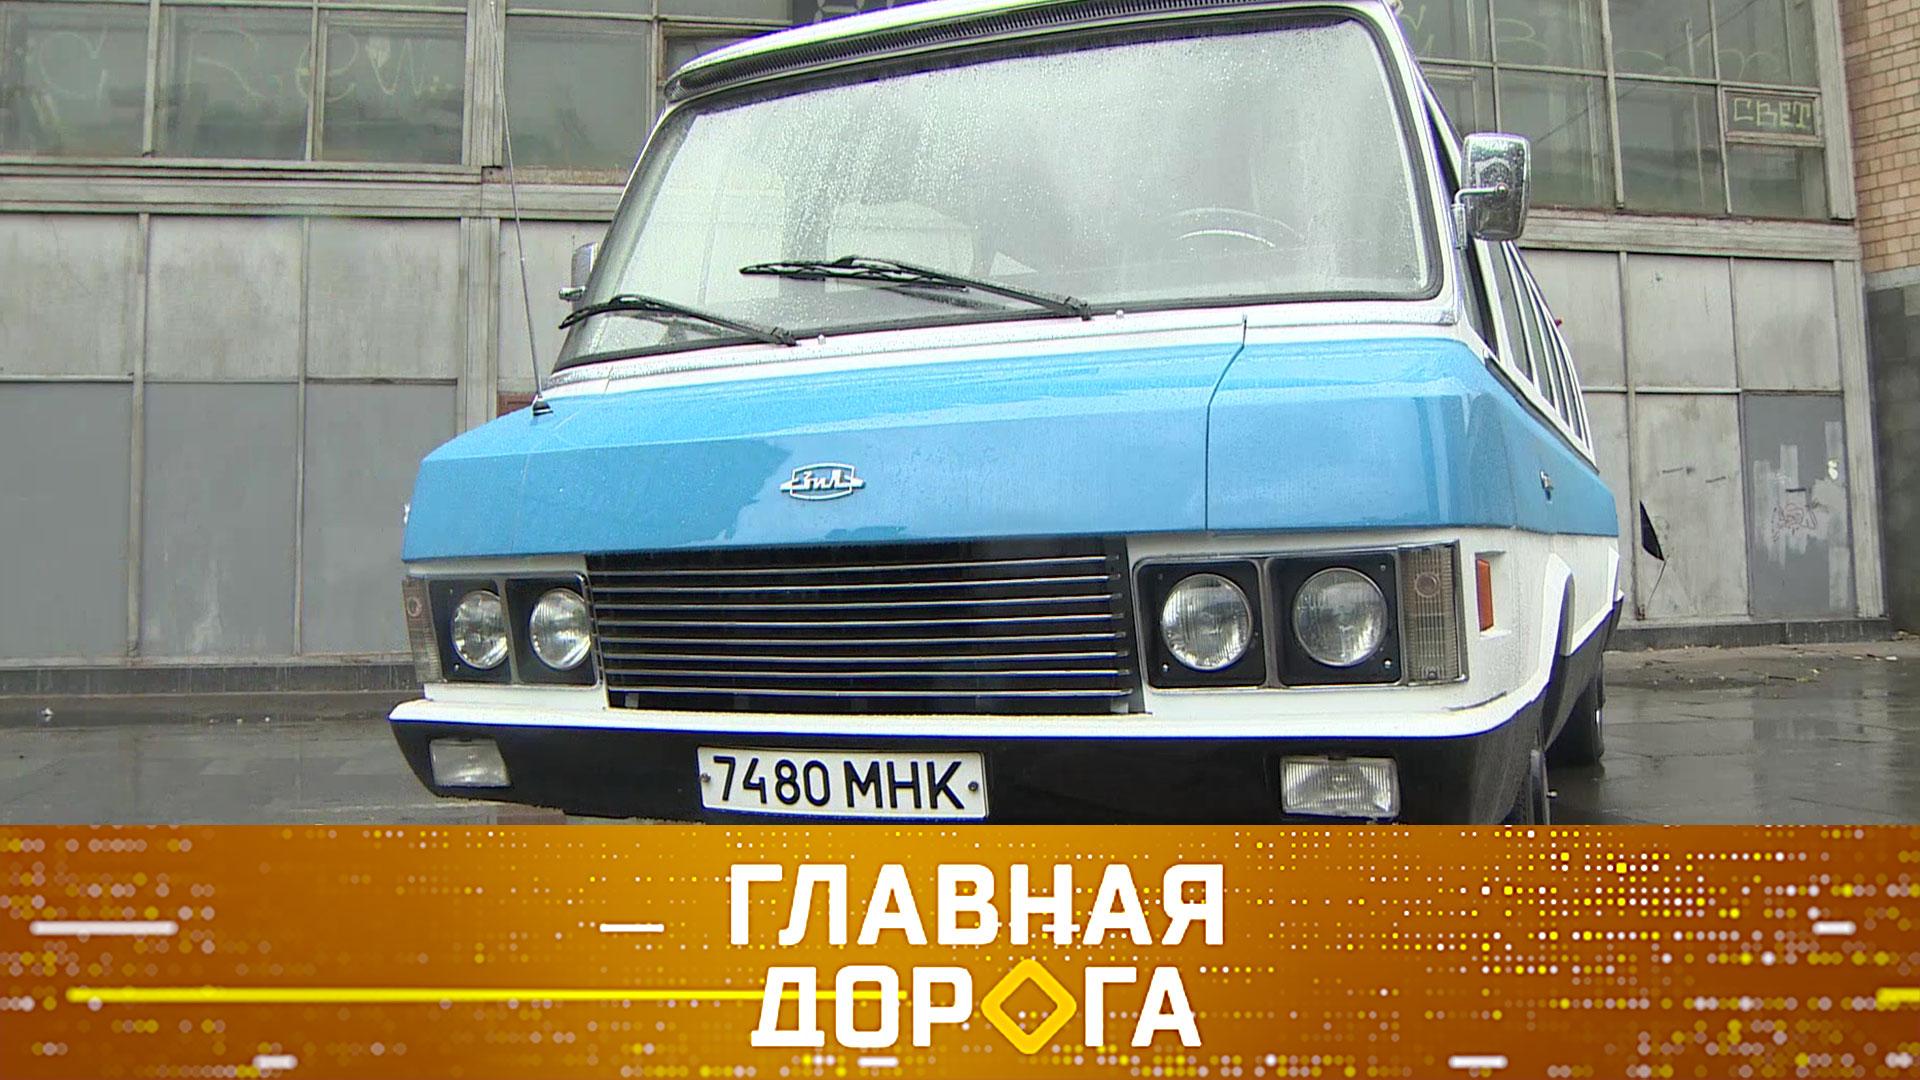 Советский микроавтобус, проблемы каршеринга итест карманного алкотестера | Главная дорога